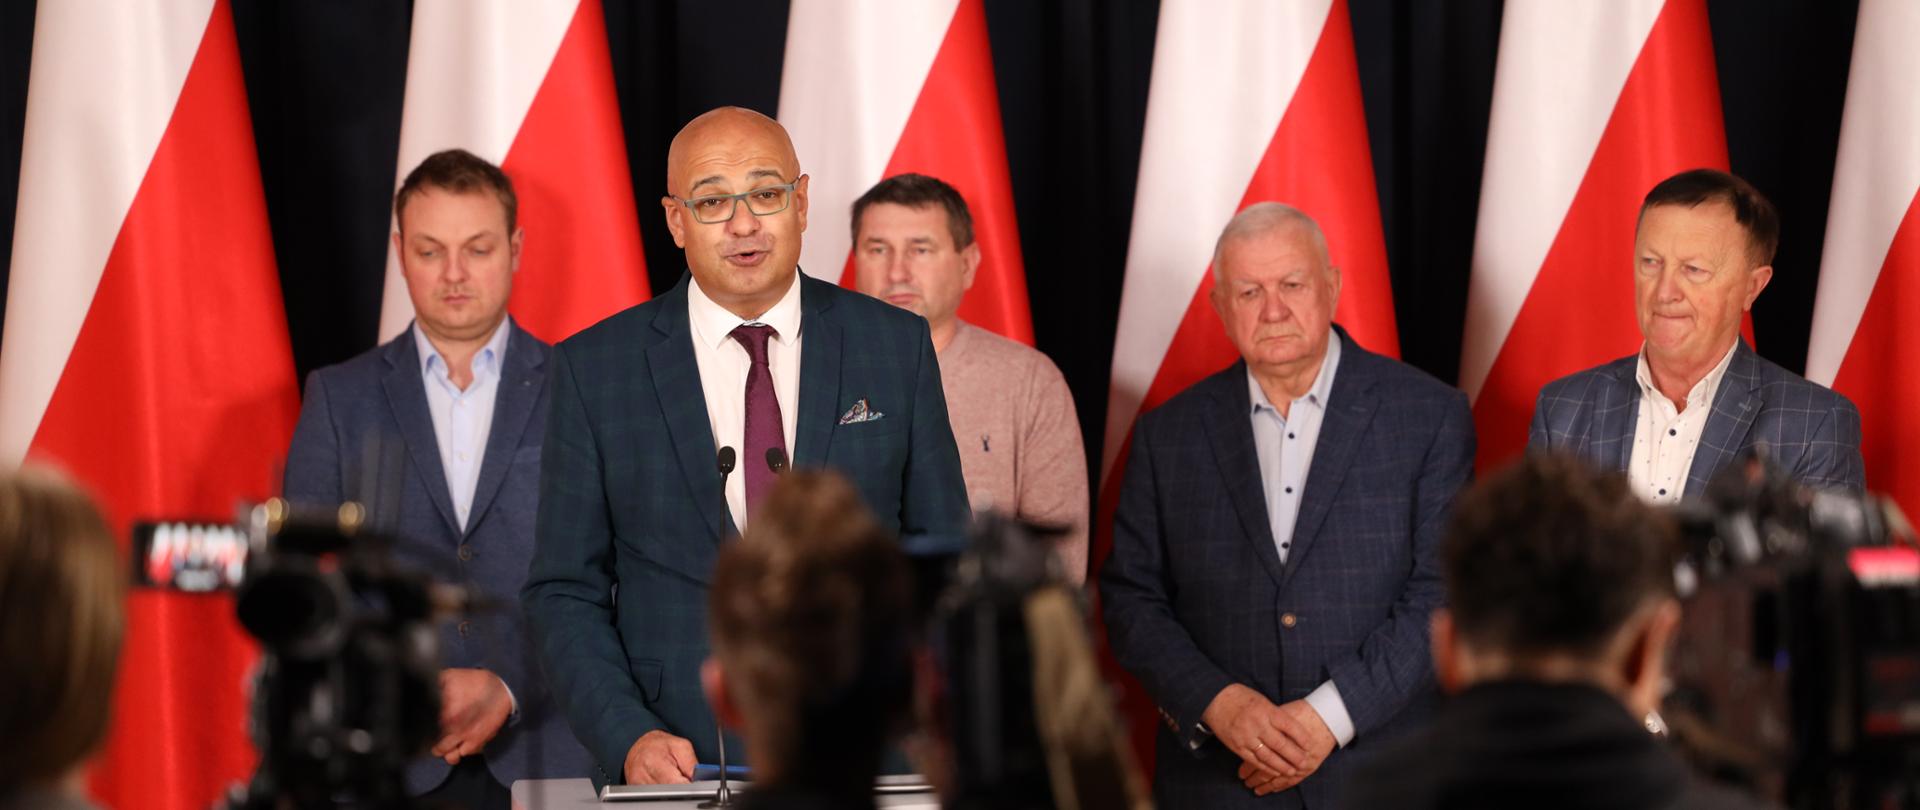 Уряд Польщі заявив про домовленість з пікетувальниками на кордоні з Україною